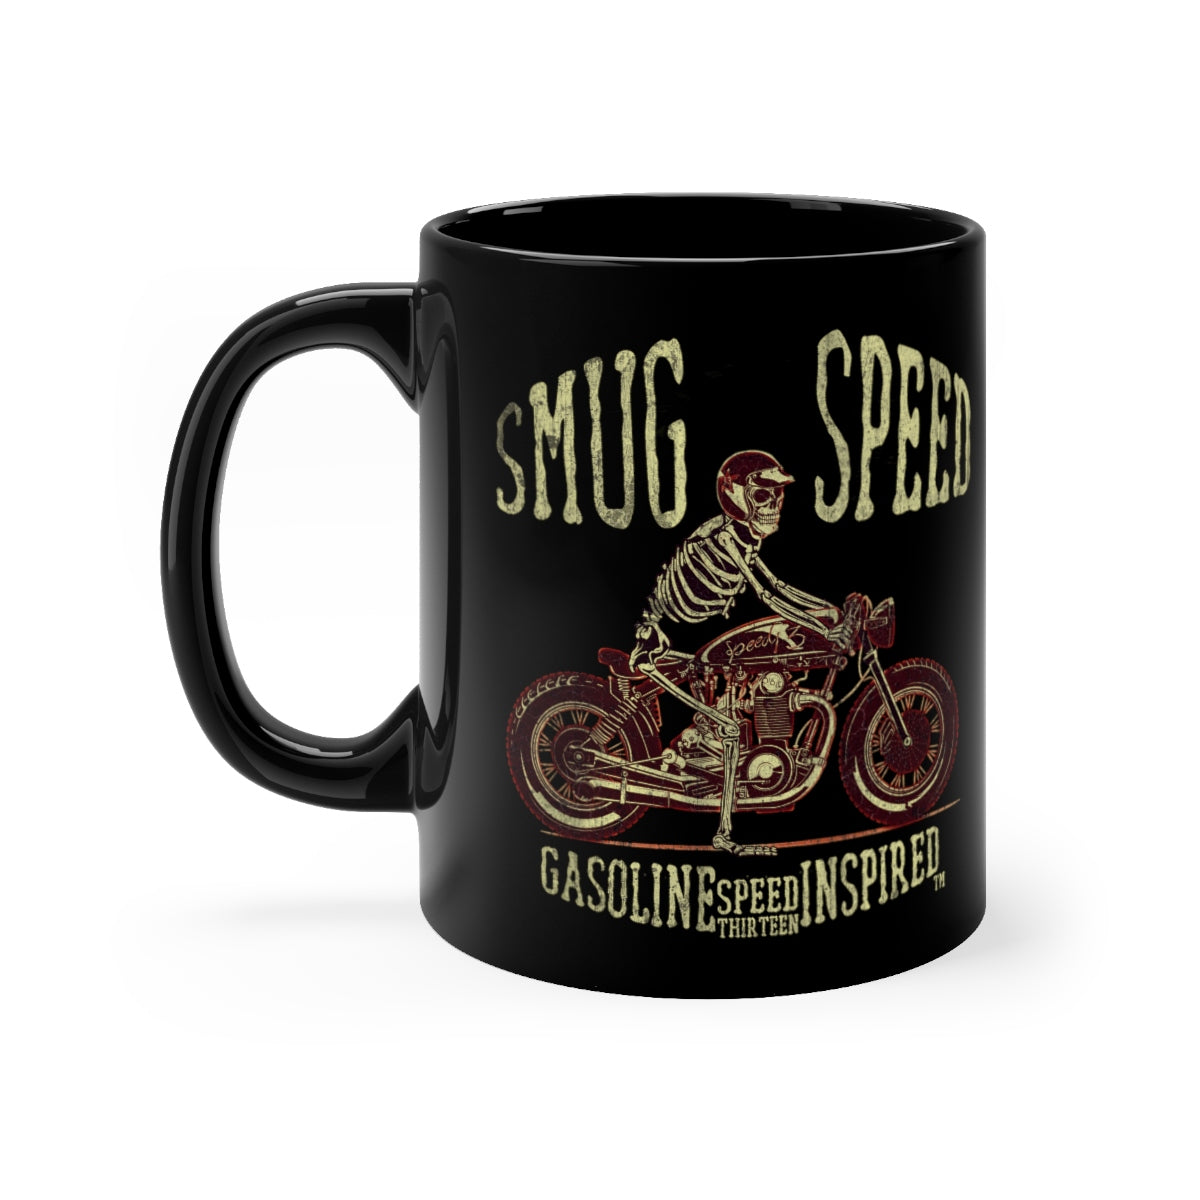 Smug Speed - Black mug 11oz